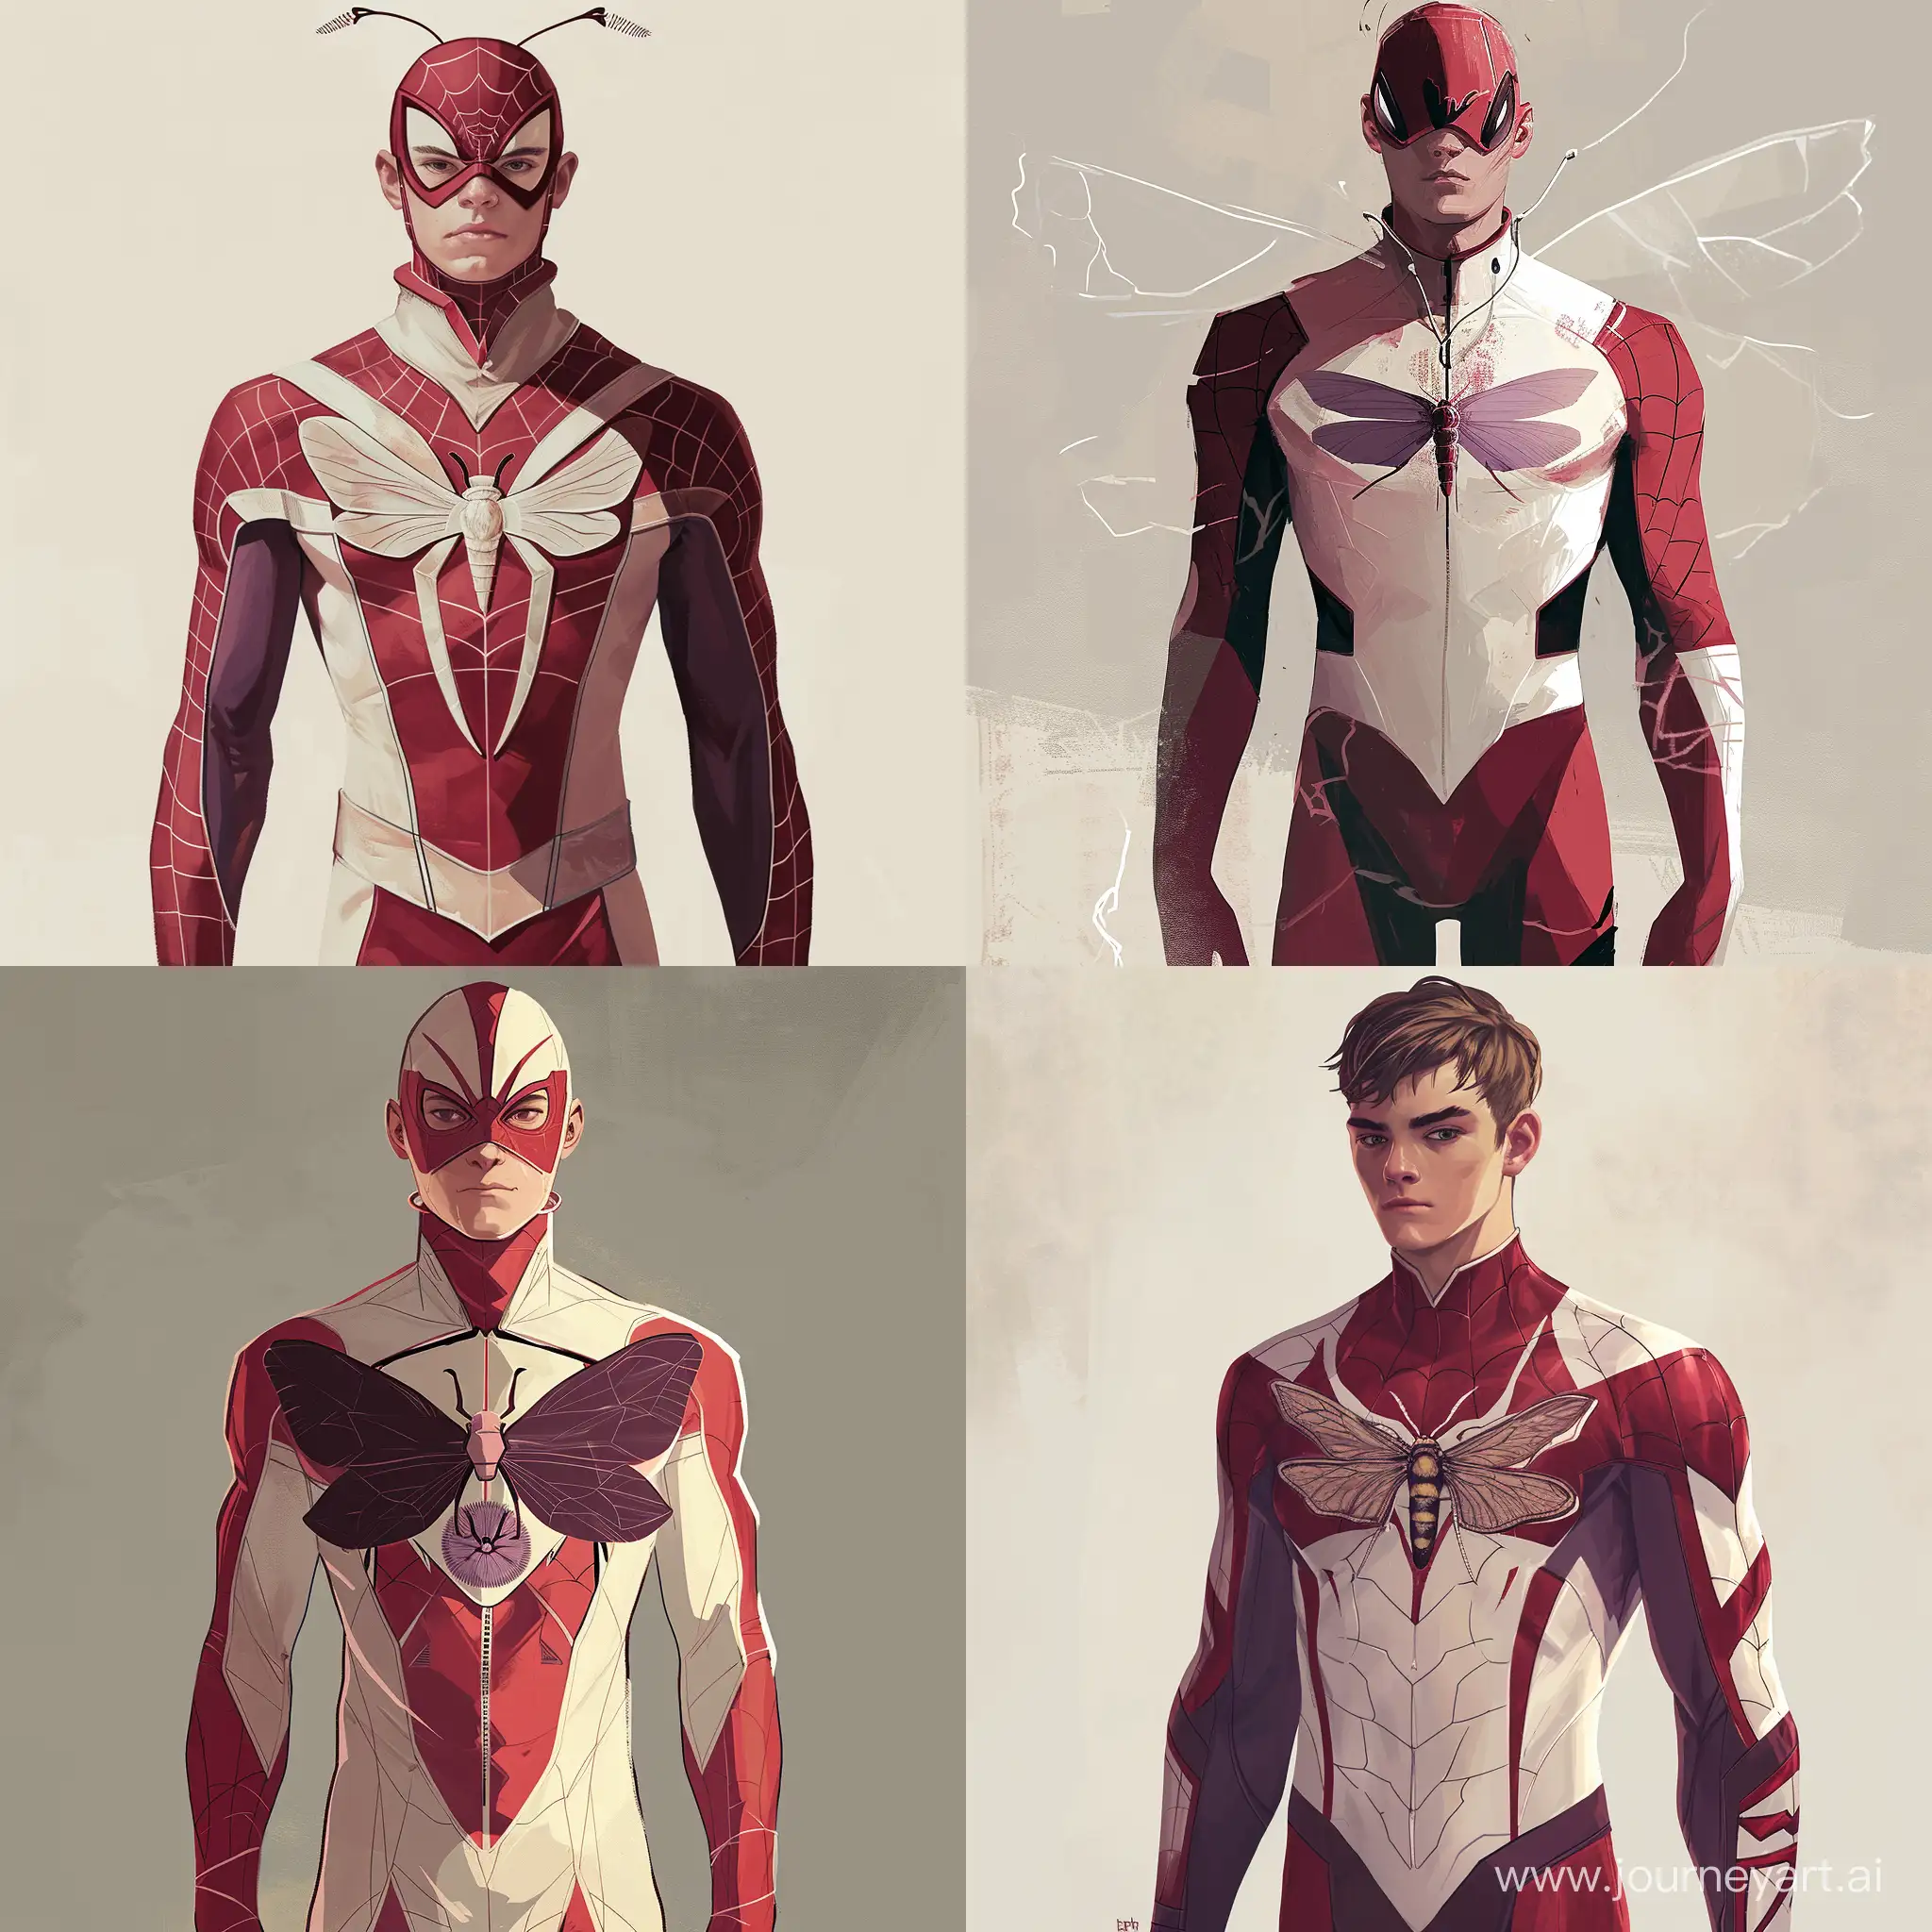 MothMan-Stylish-18YearOld-Superhero-in-Red-and-White-Costume